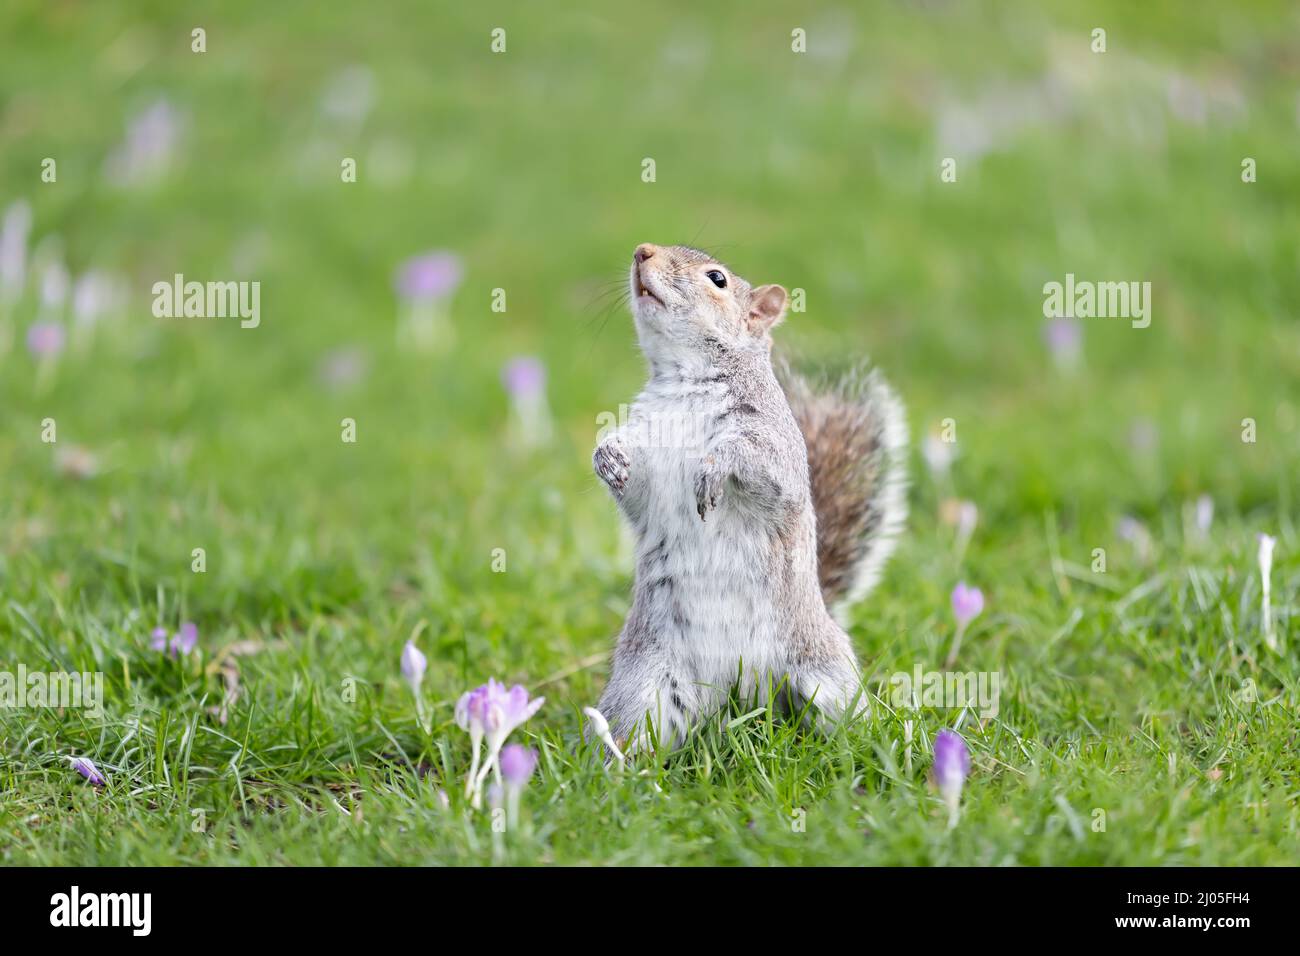 Nahaufnahme eines östlichen grauen Eichhörnchens, das auf seinen Hinterbeinen im grünen Gras mit Krokus steht, Großbritannien. Stockfoto